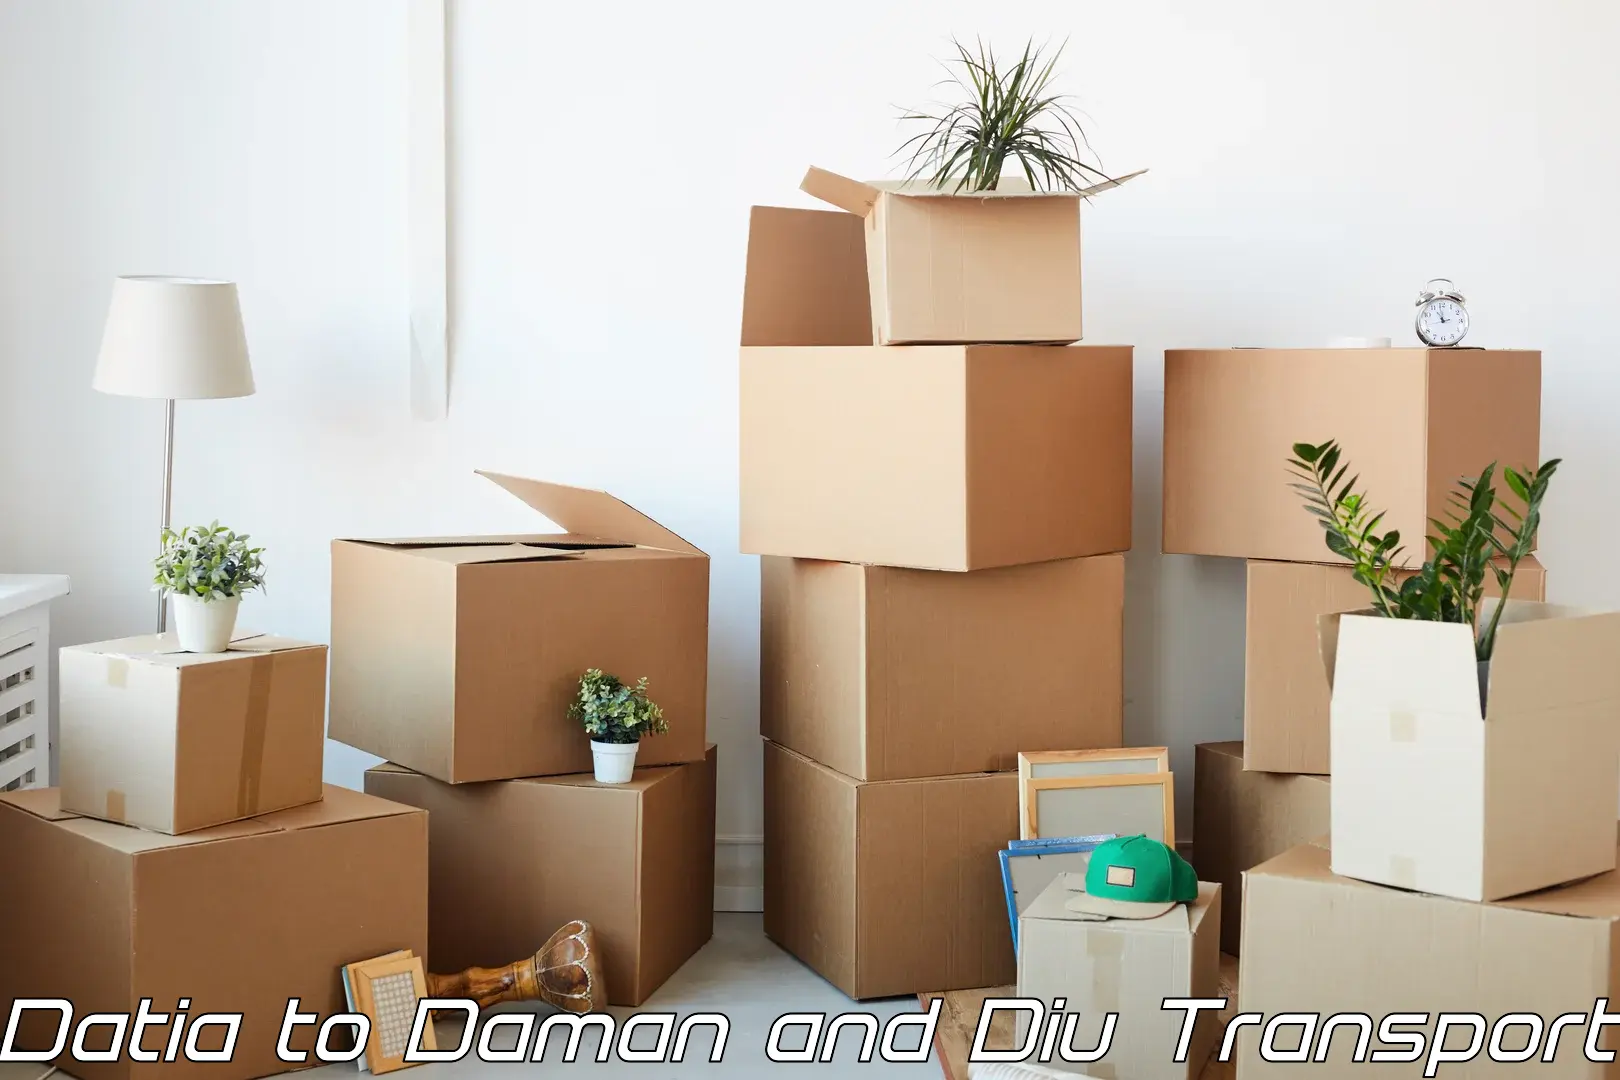 Furniture transport service Datia to Diu